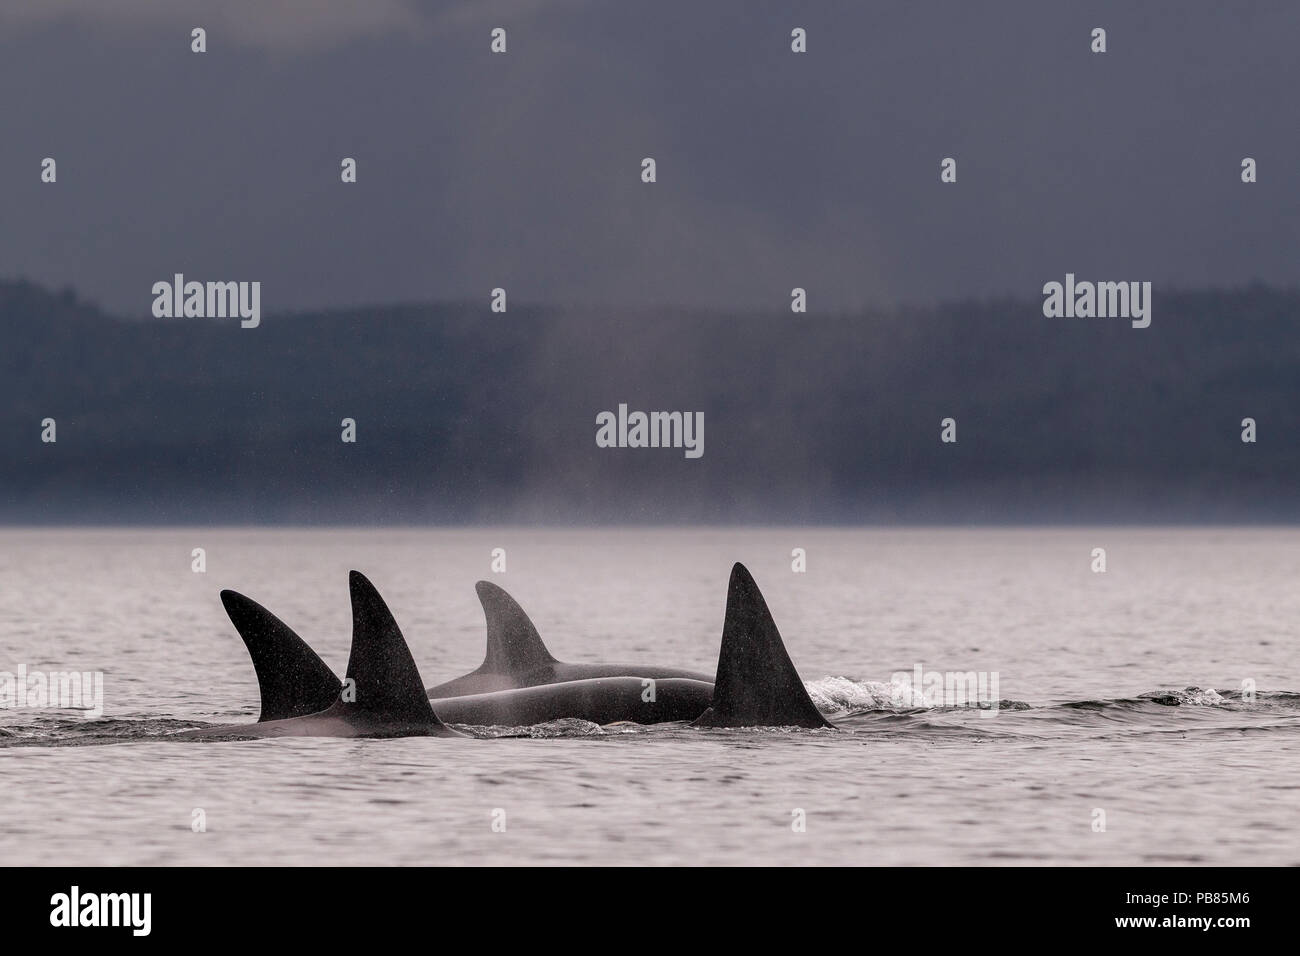 Une famille du nord de l'pod orques résidents (épaulards, Orcinus orca) croisière le long de Queen Charlotte Strait avec Malcolm Island, près de cap Lizard, Fi Banque D'Images